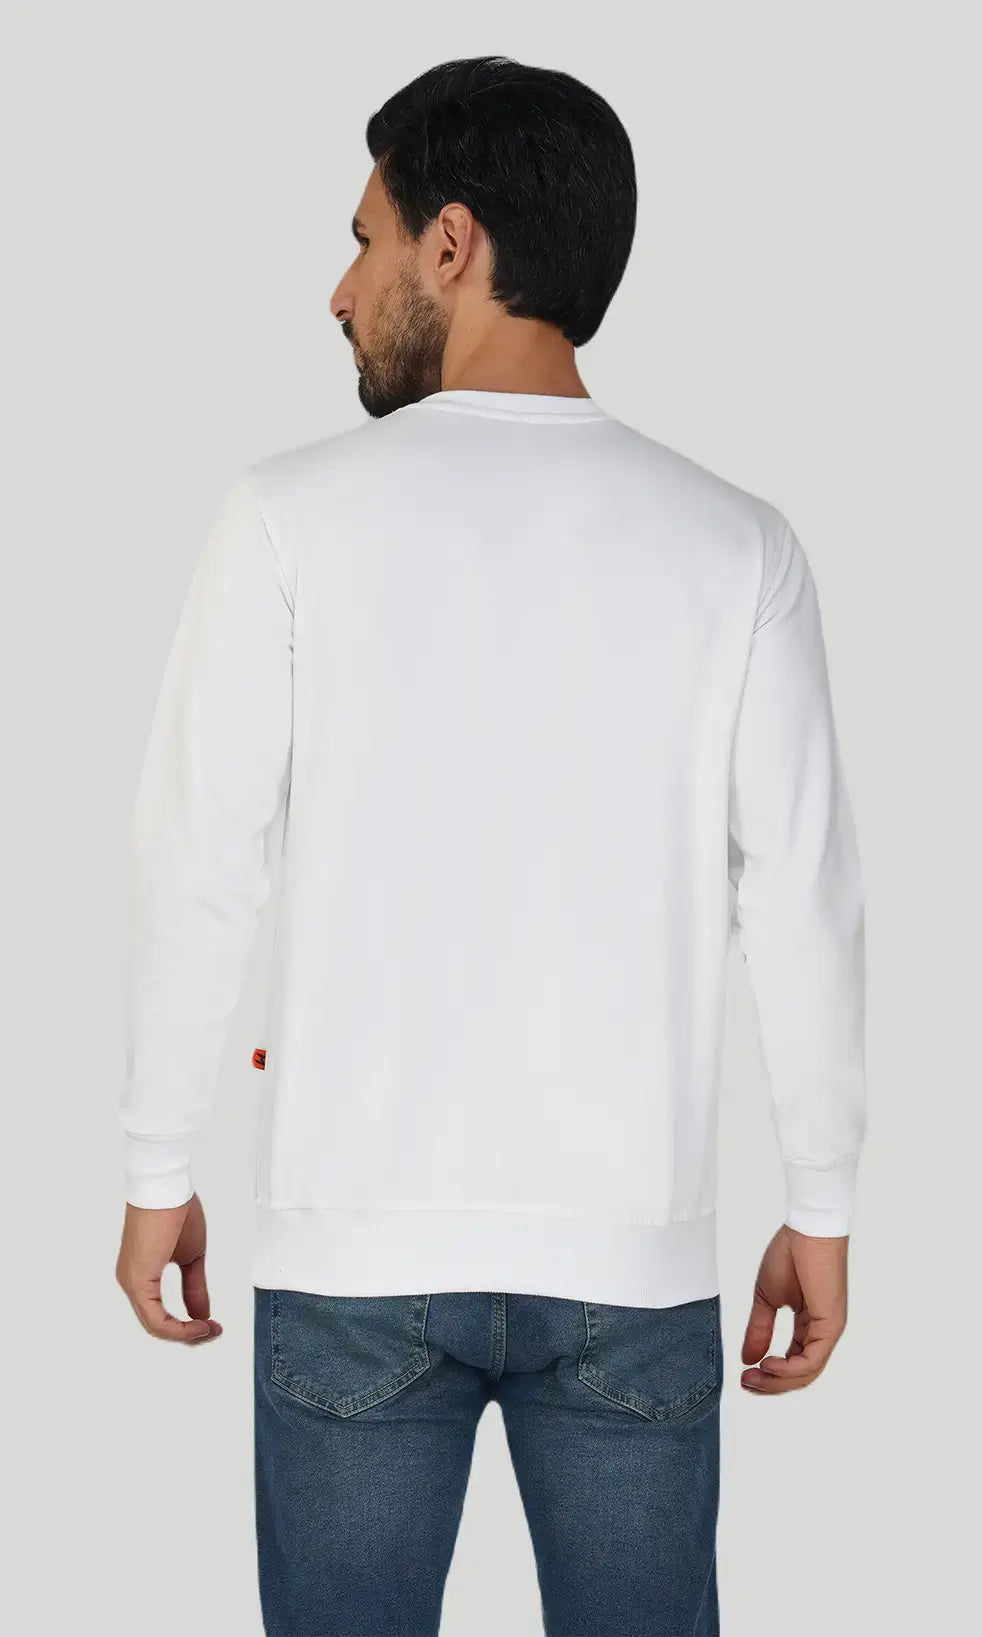 Mebadass Cotton Men's Winterwear Sweatshirt - White